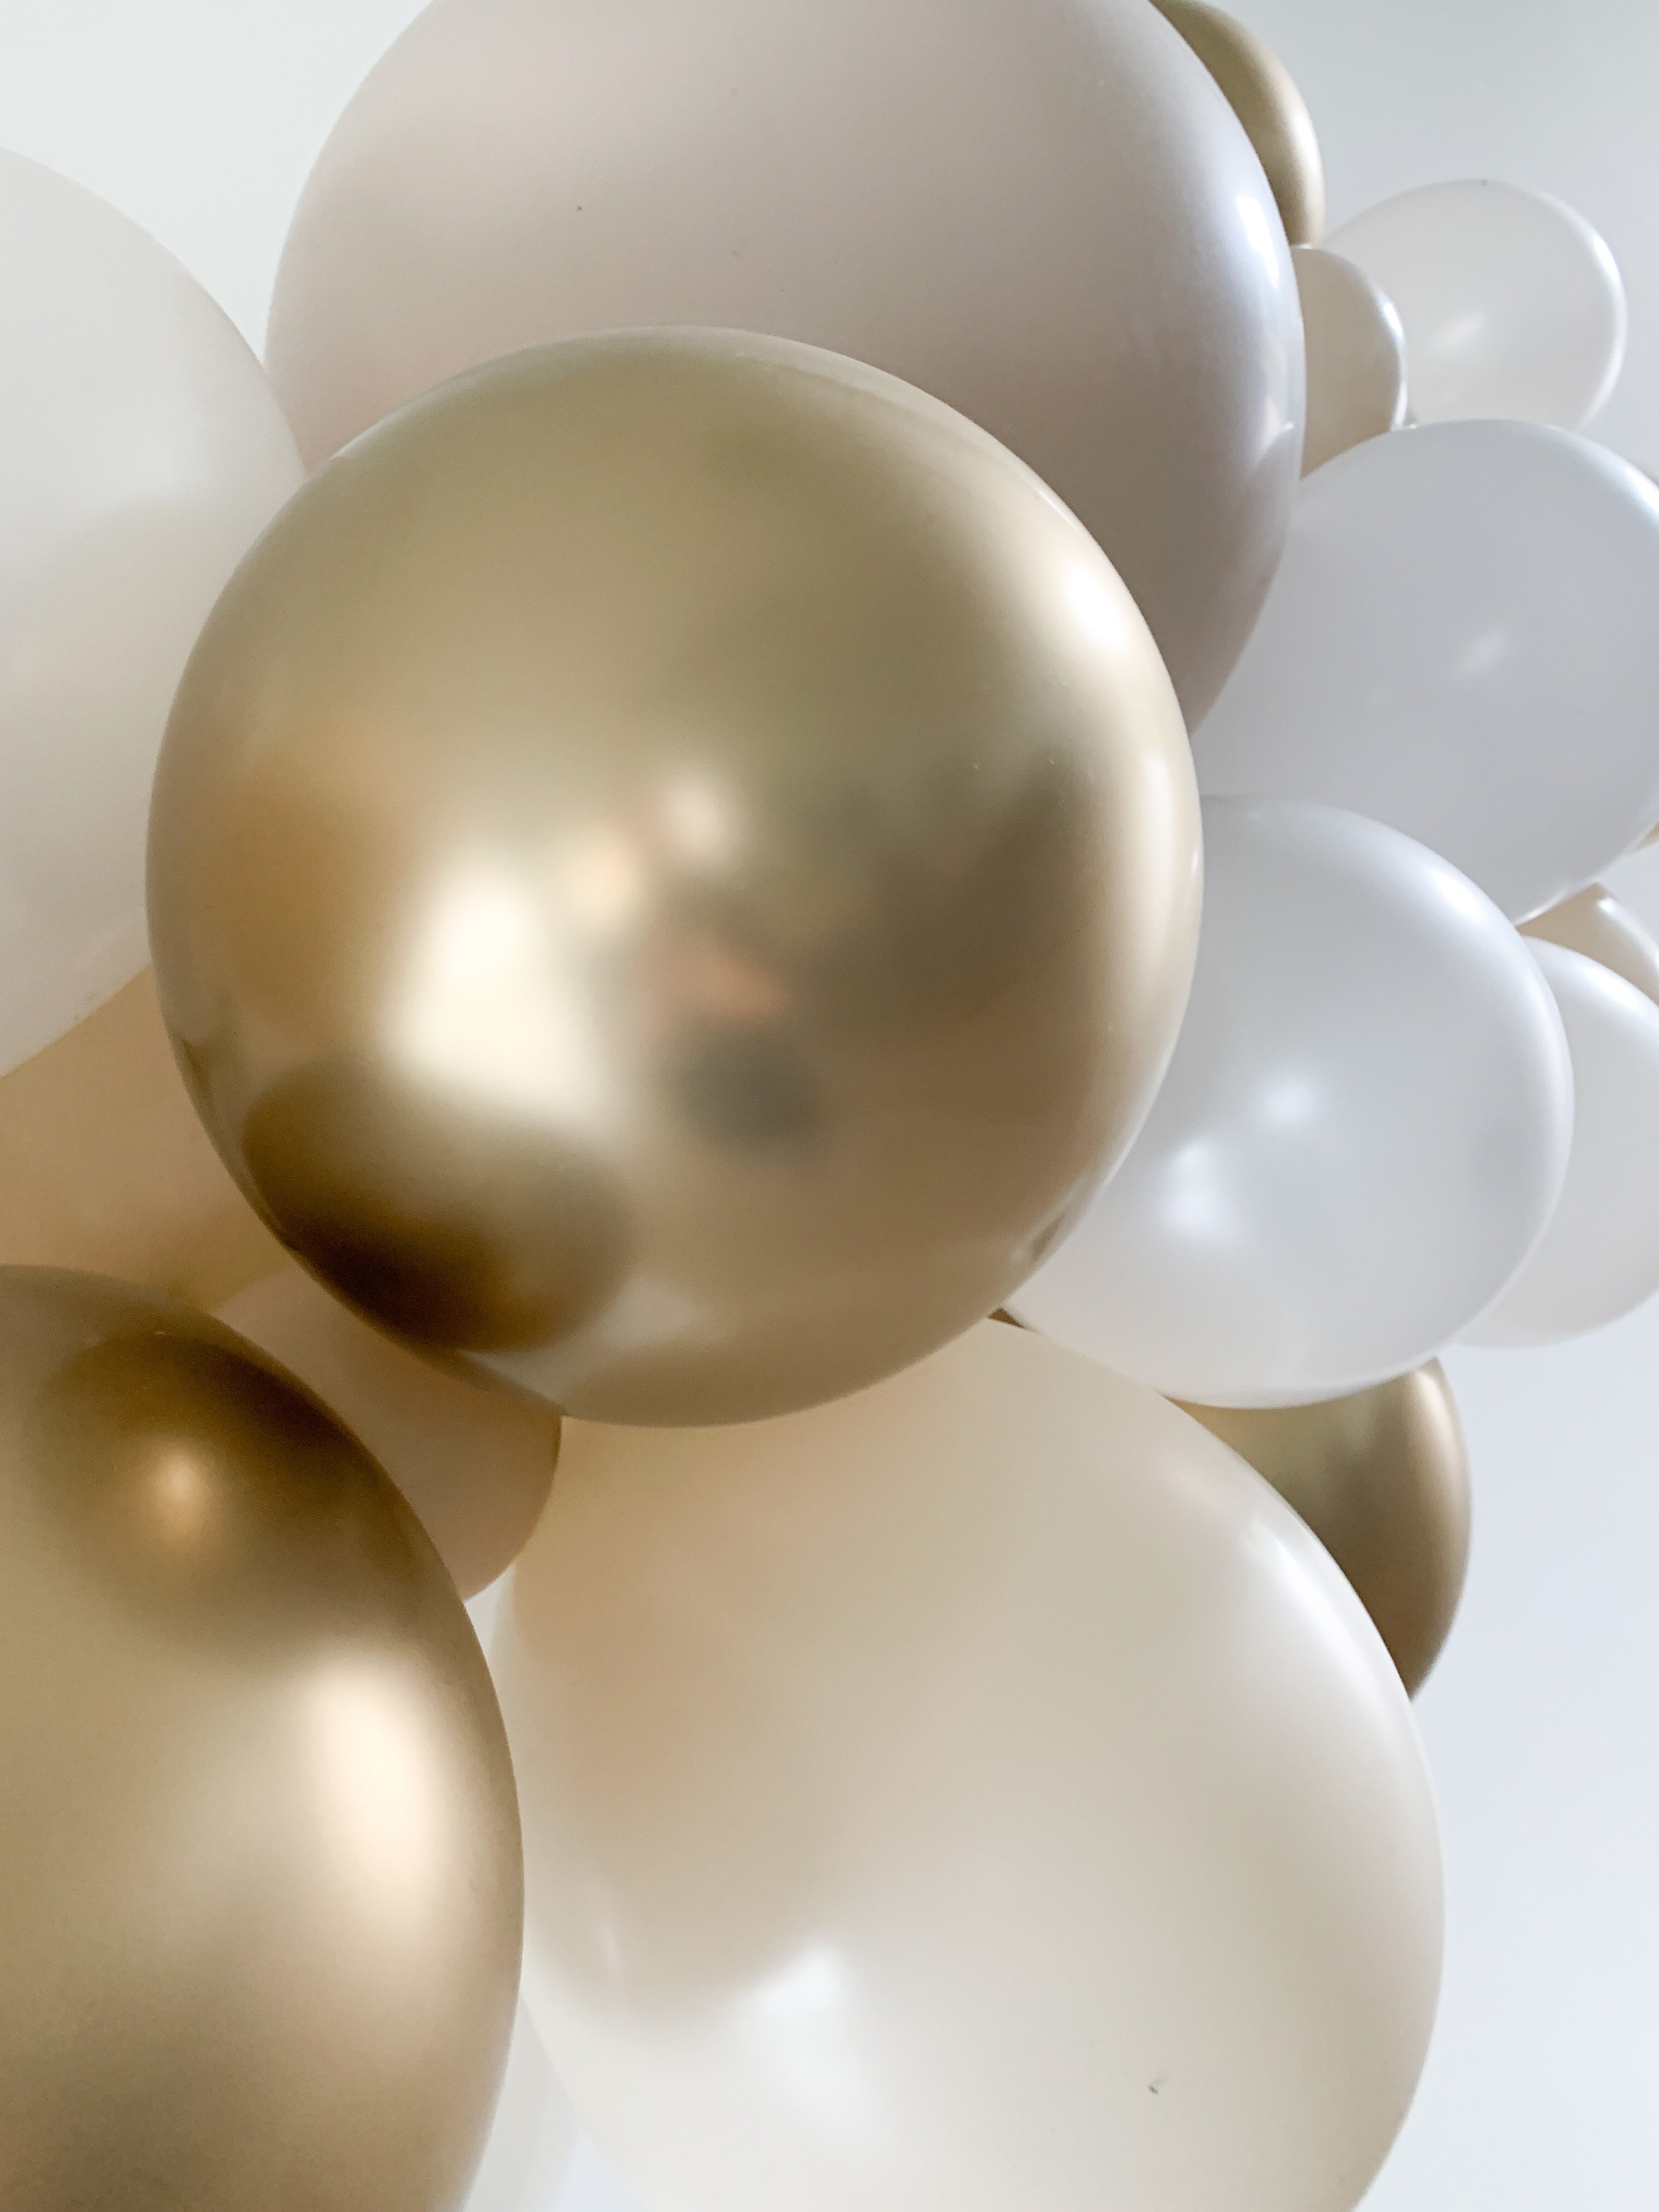 Ballonslinger ballonnenboog zand beige nude goud wit als feestdecoratie